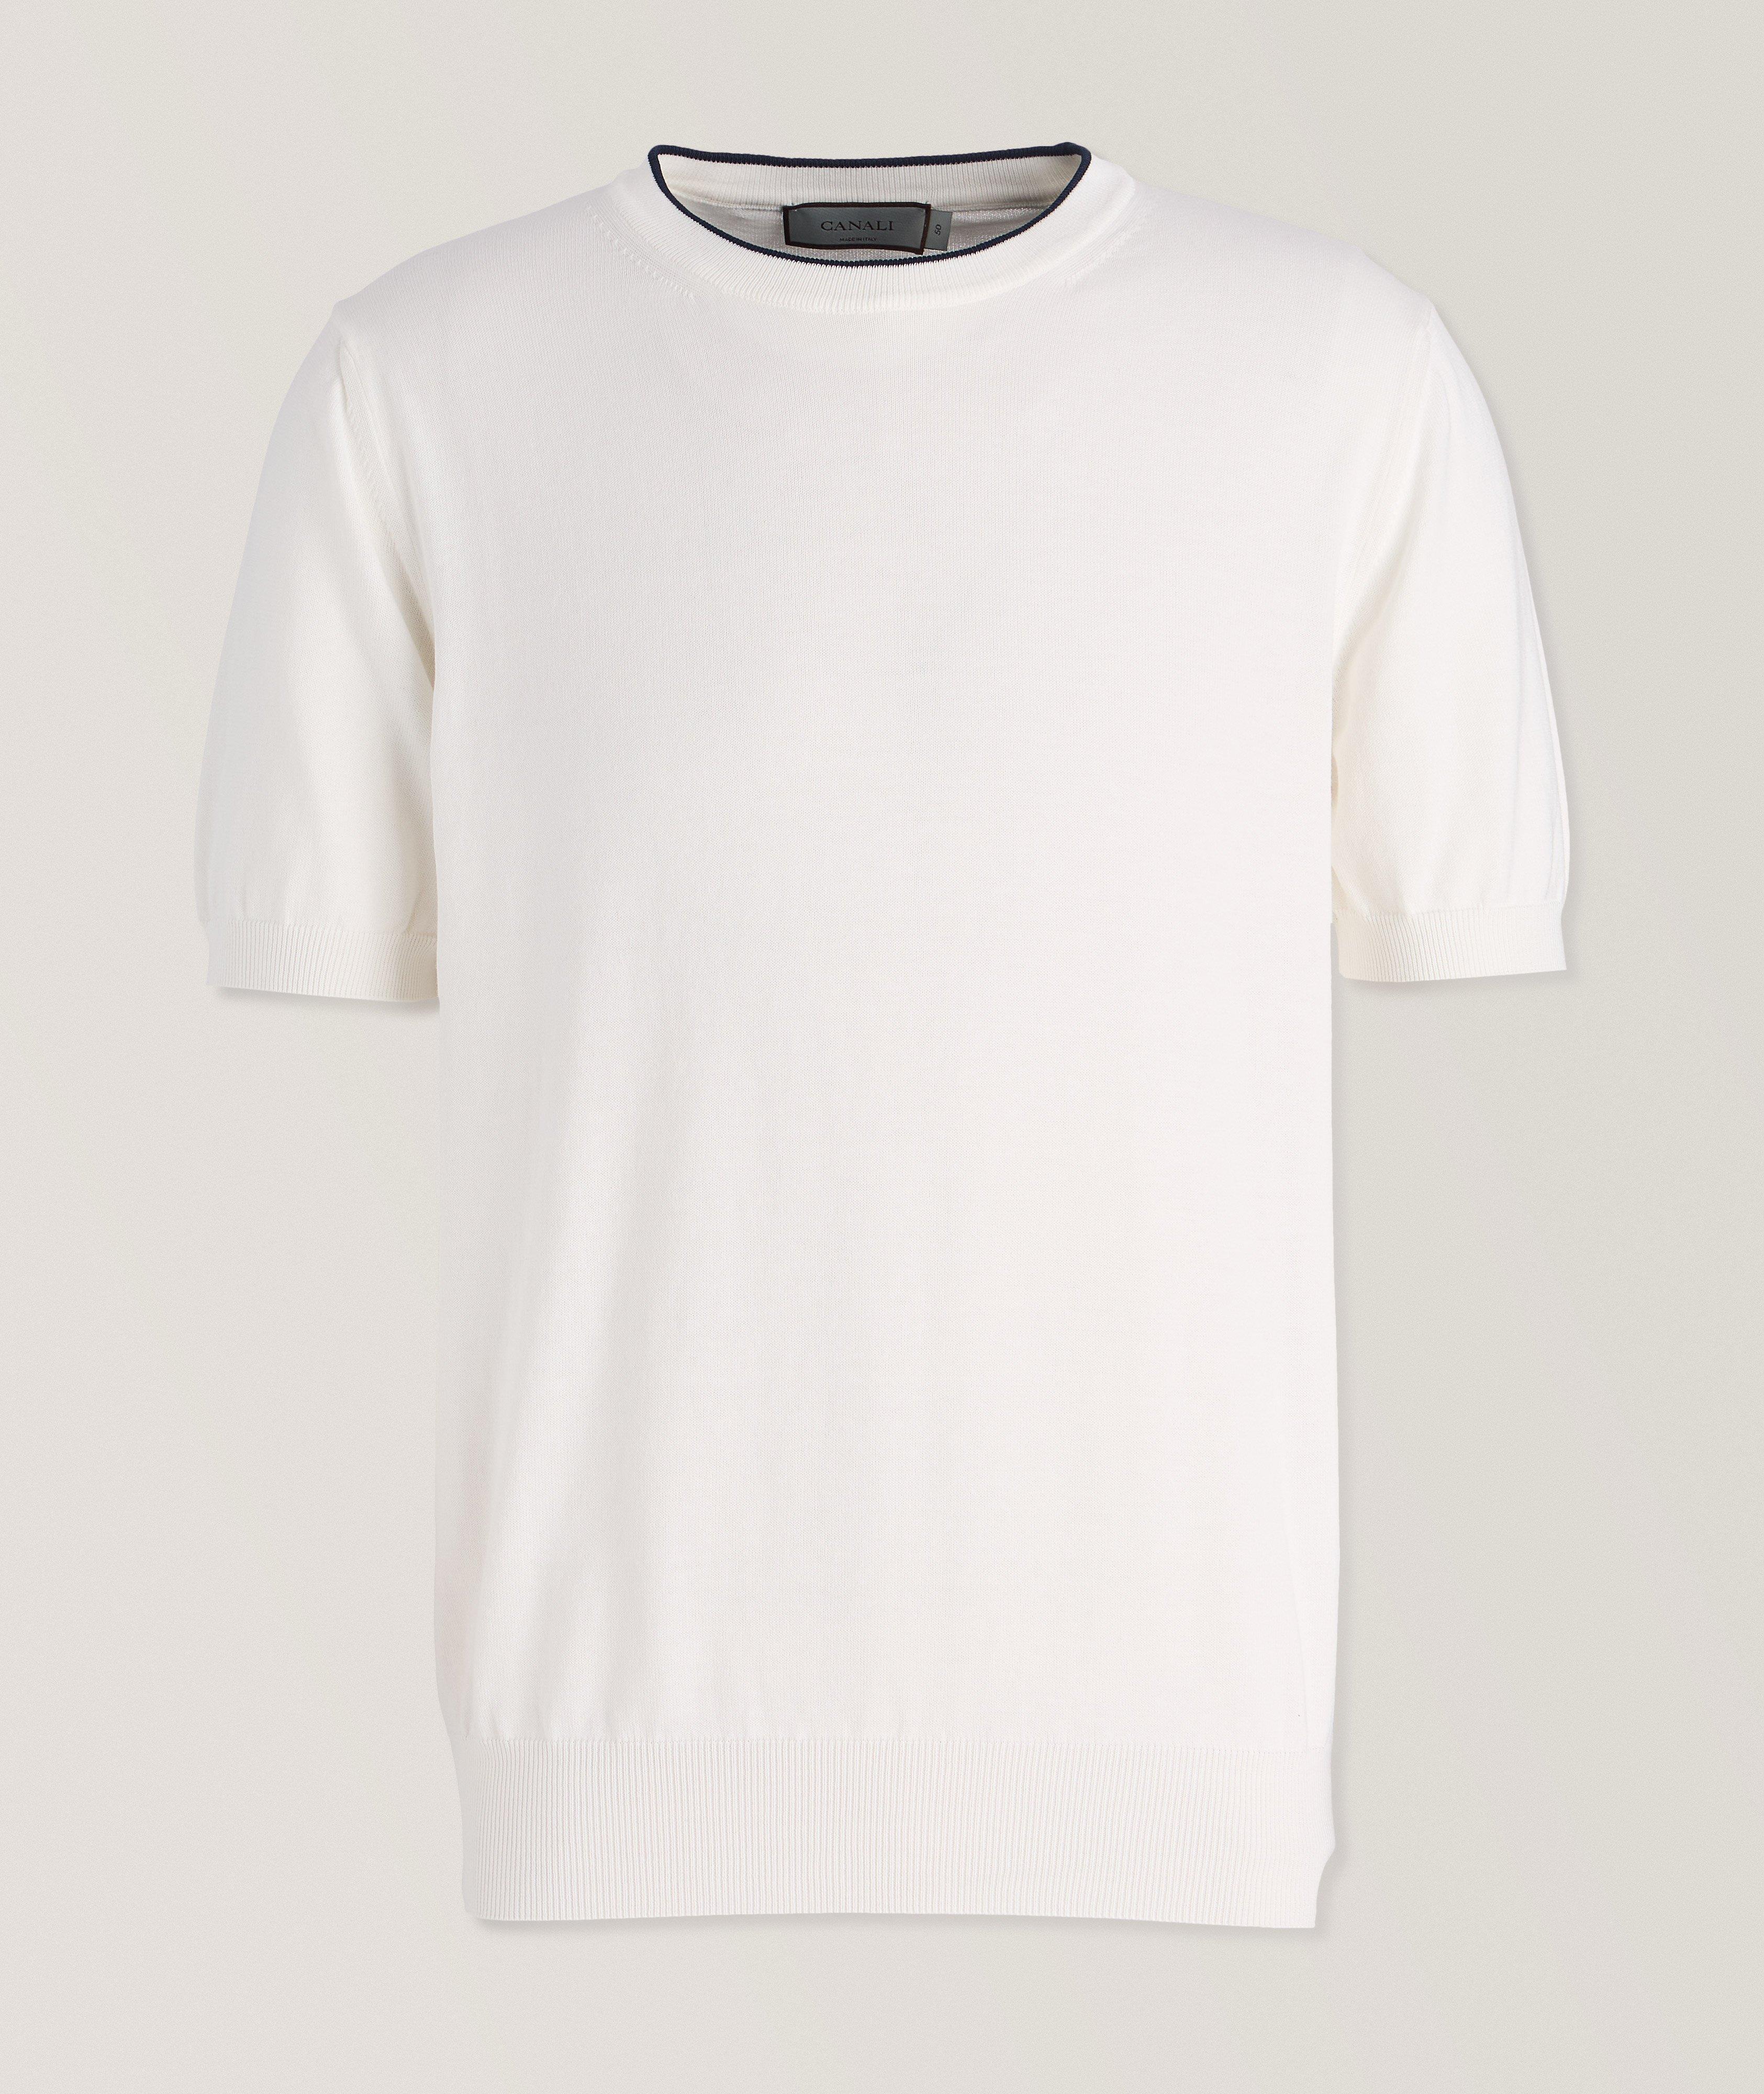 T-shirt en coton à détail contrastant image 0